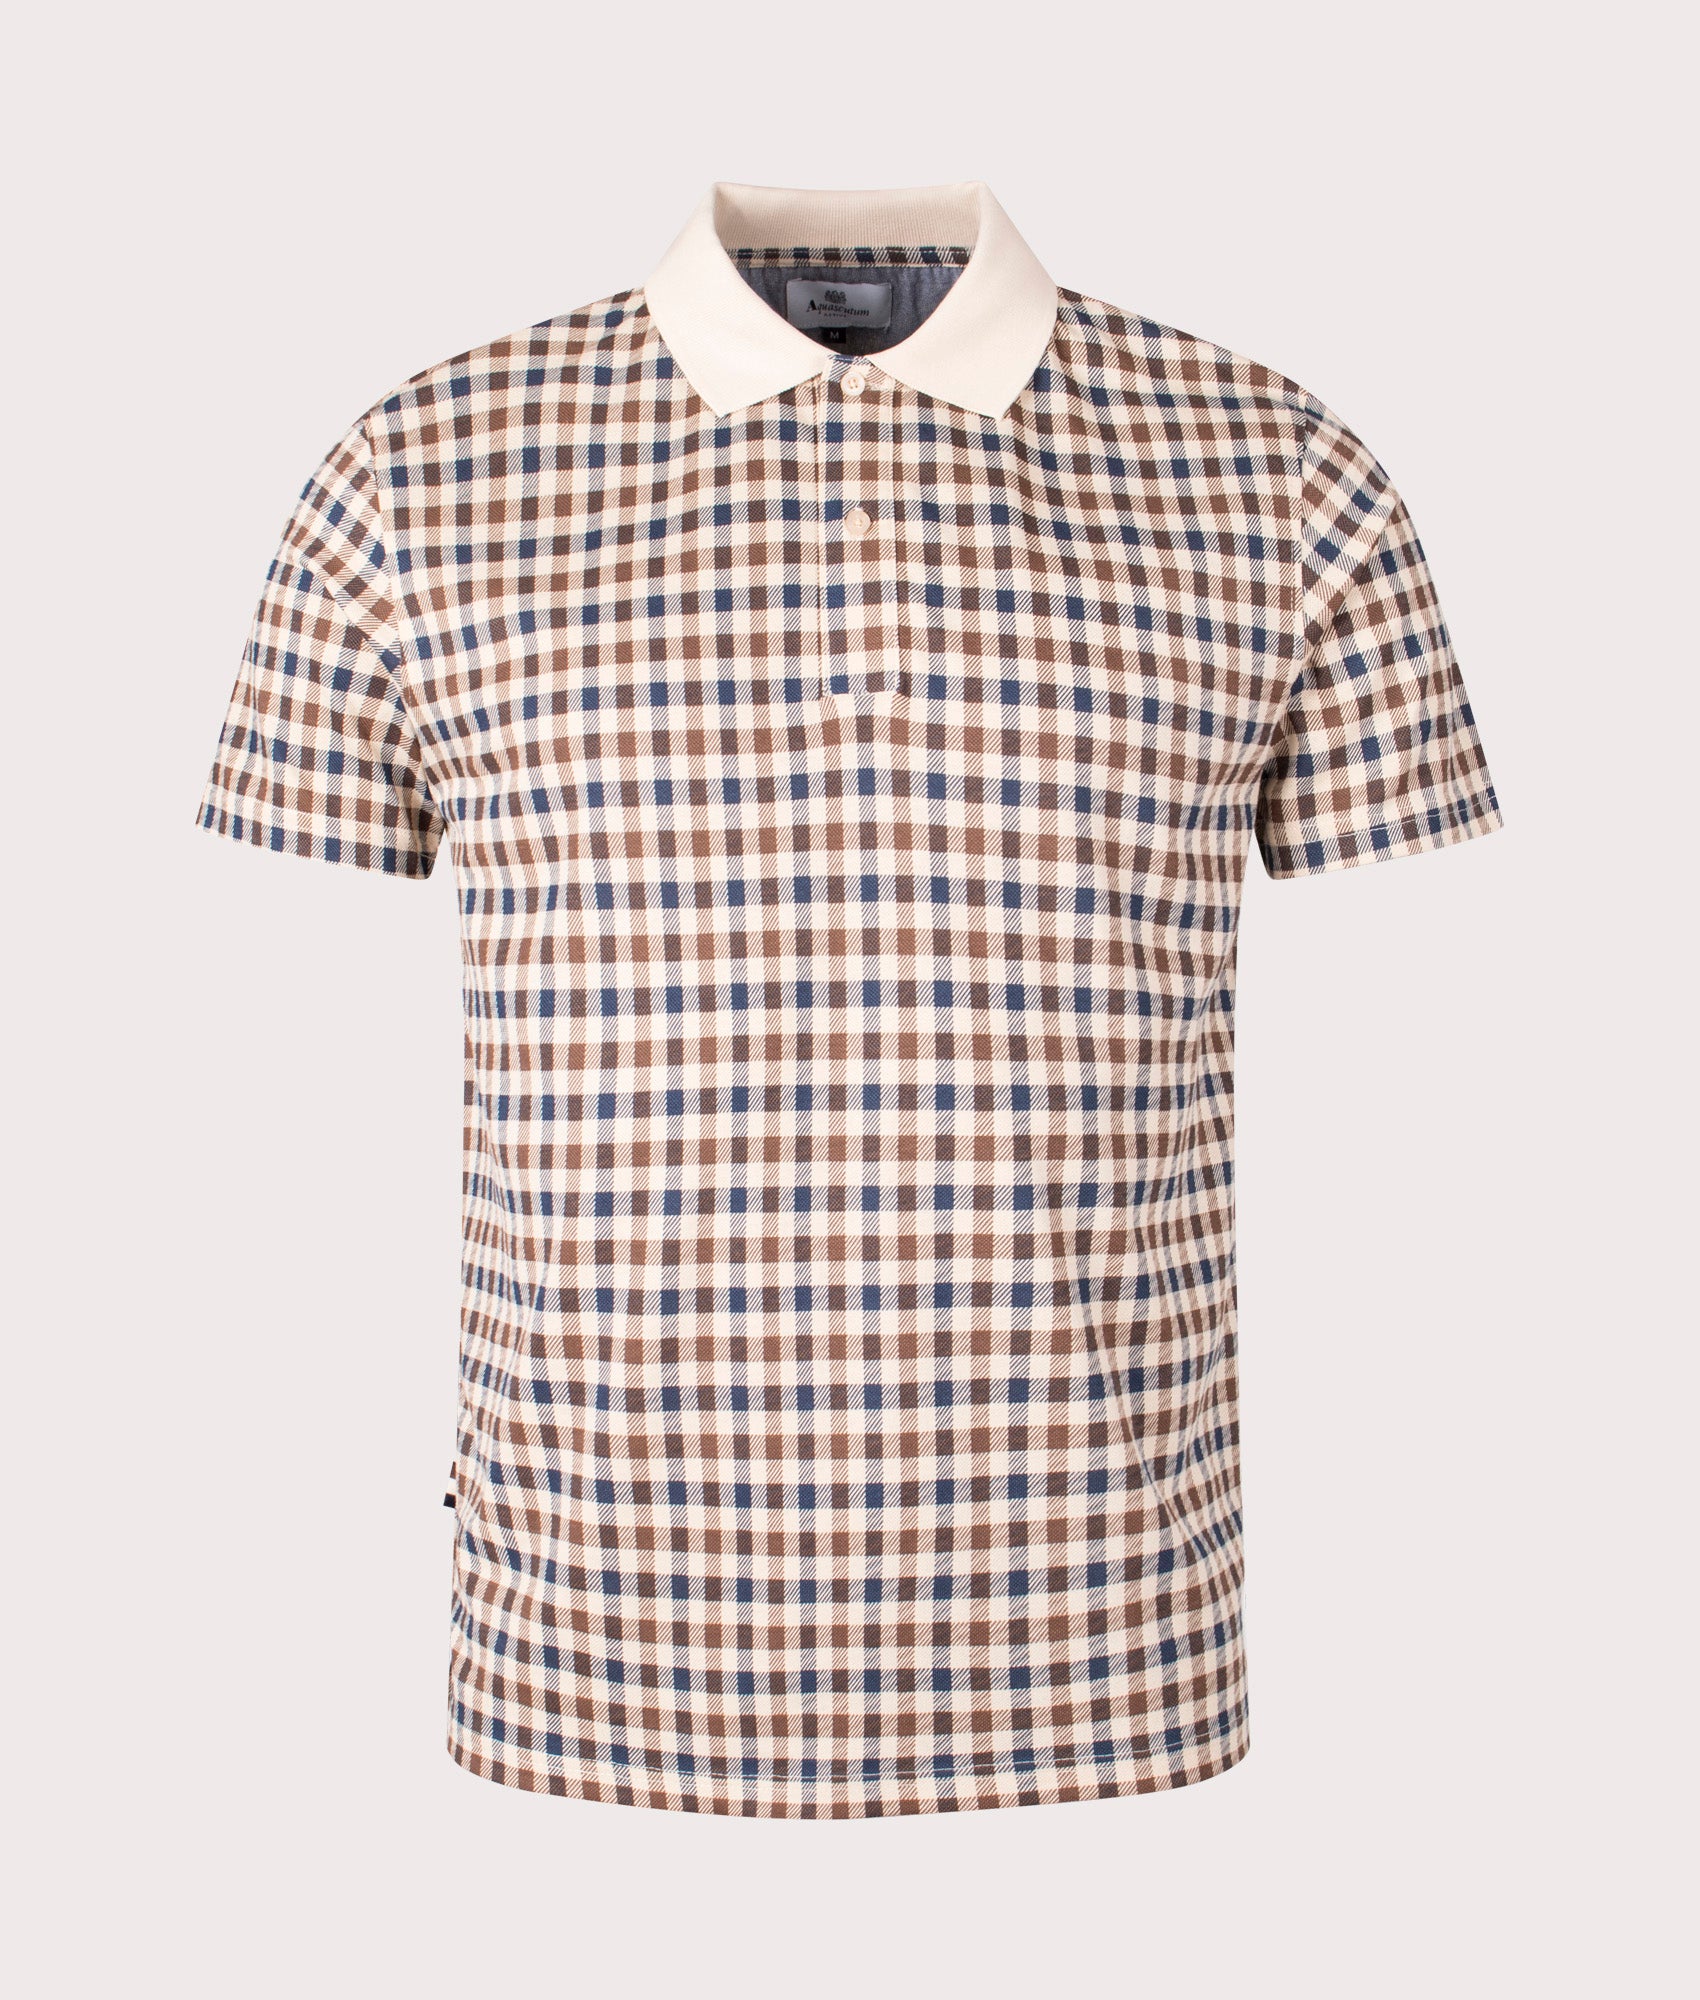 Aquascutum Mens Active Club Check Polo Shirt - Colour: 03 Beige Check - Size: Medium